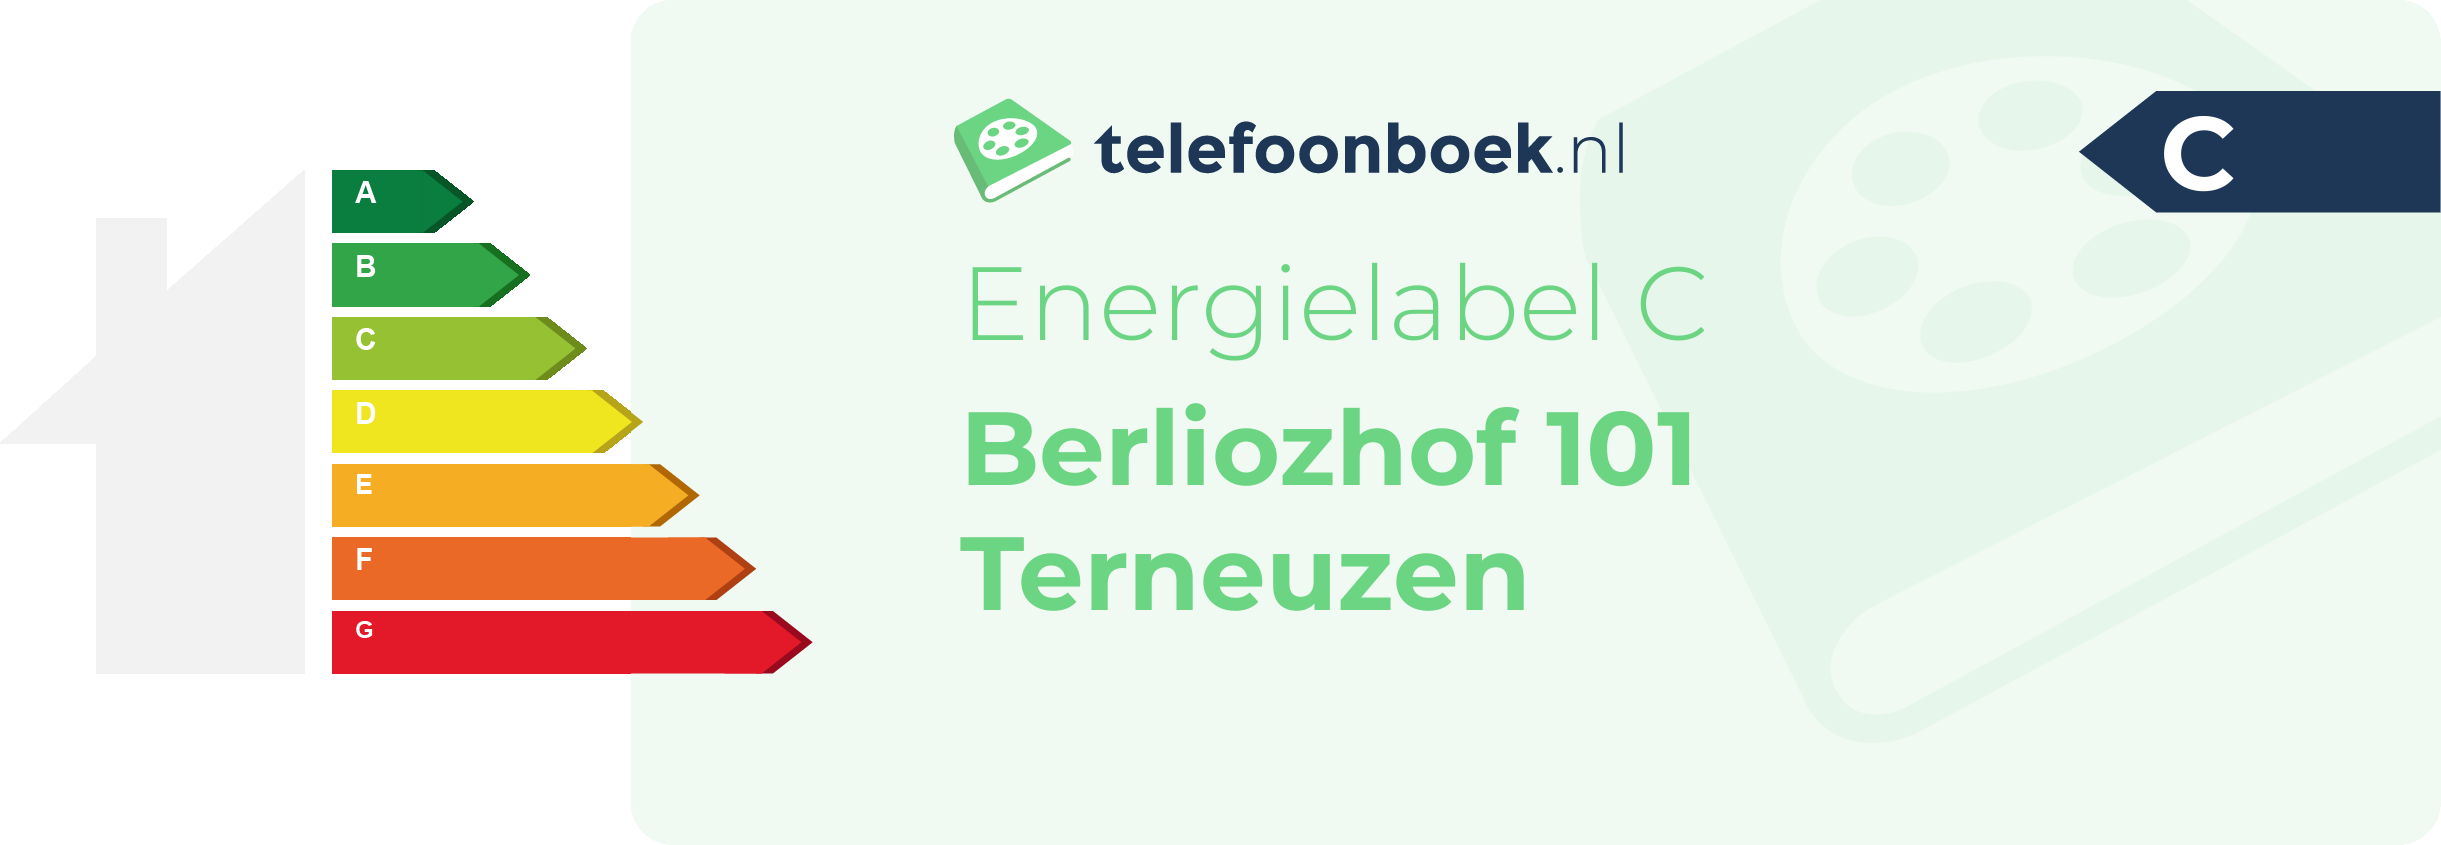 Energielabel Berliozhof 101 Terneuzen